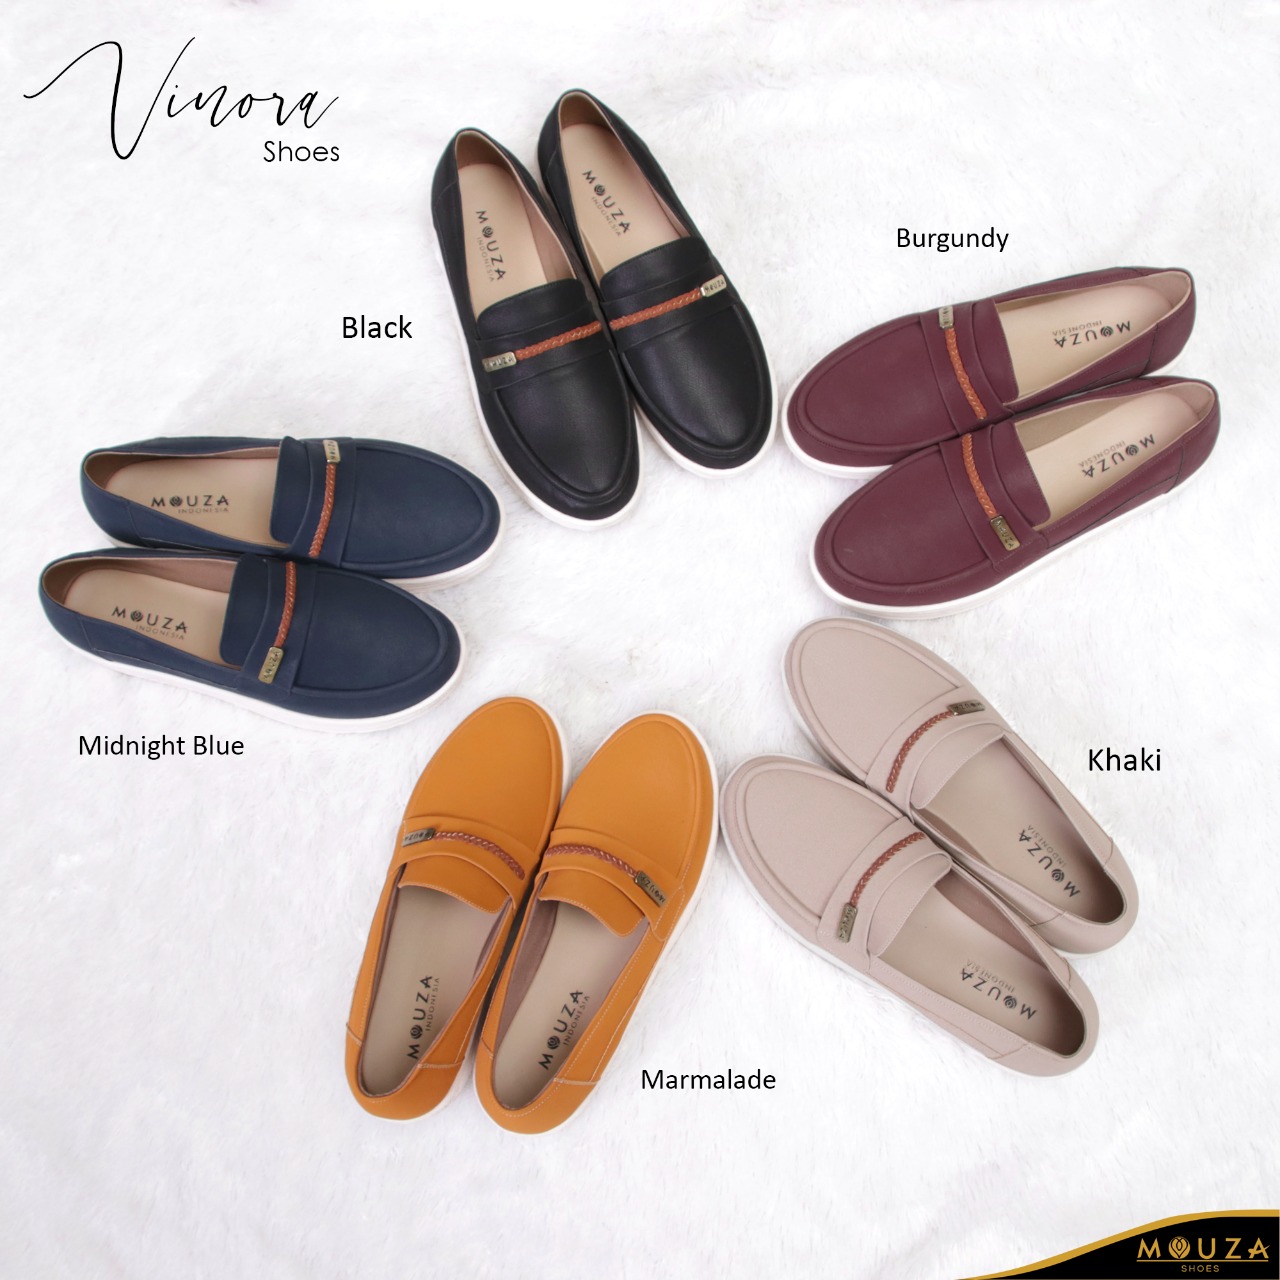 Vinora Shoes